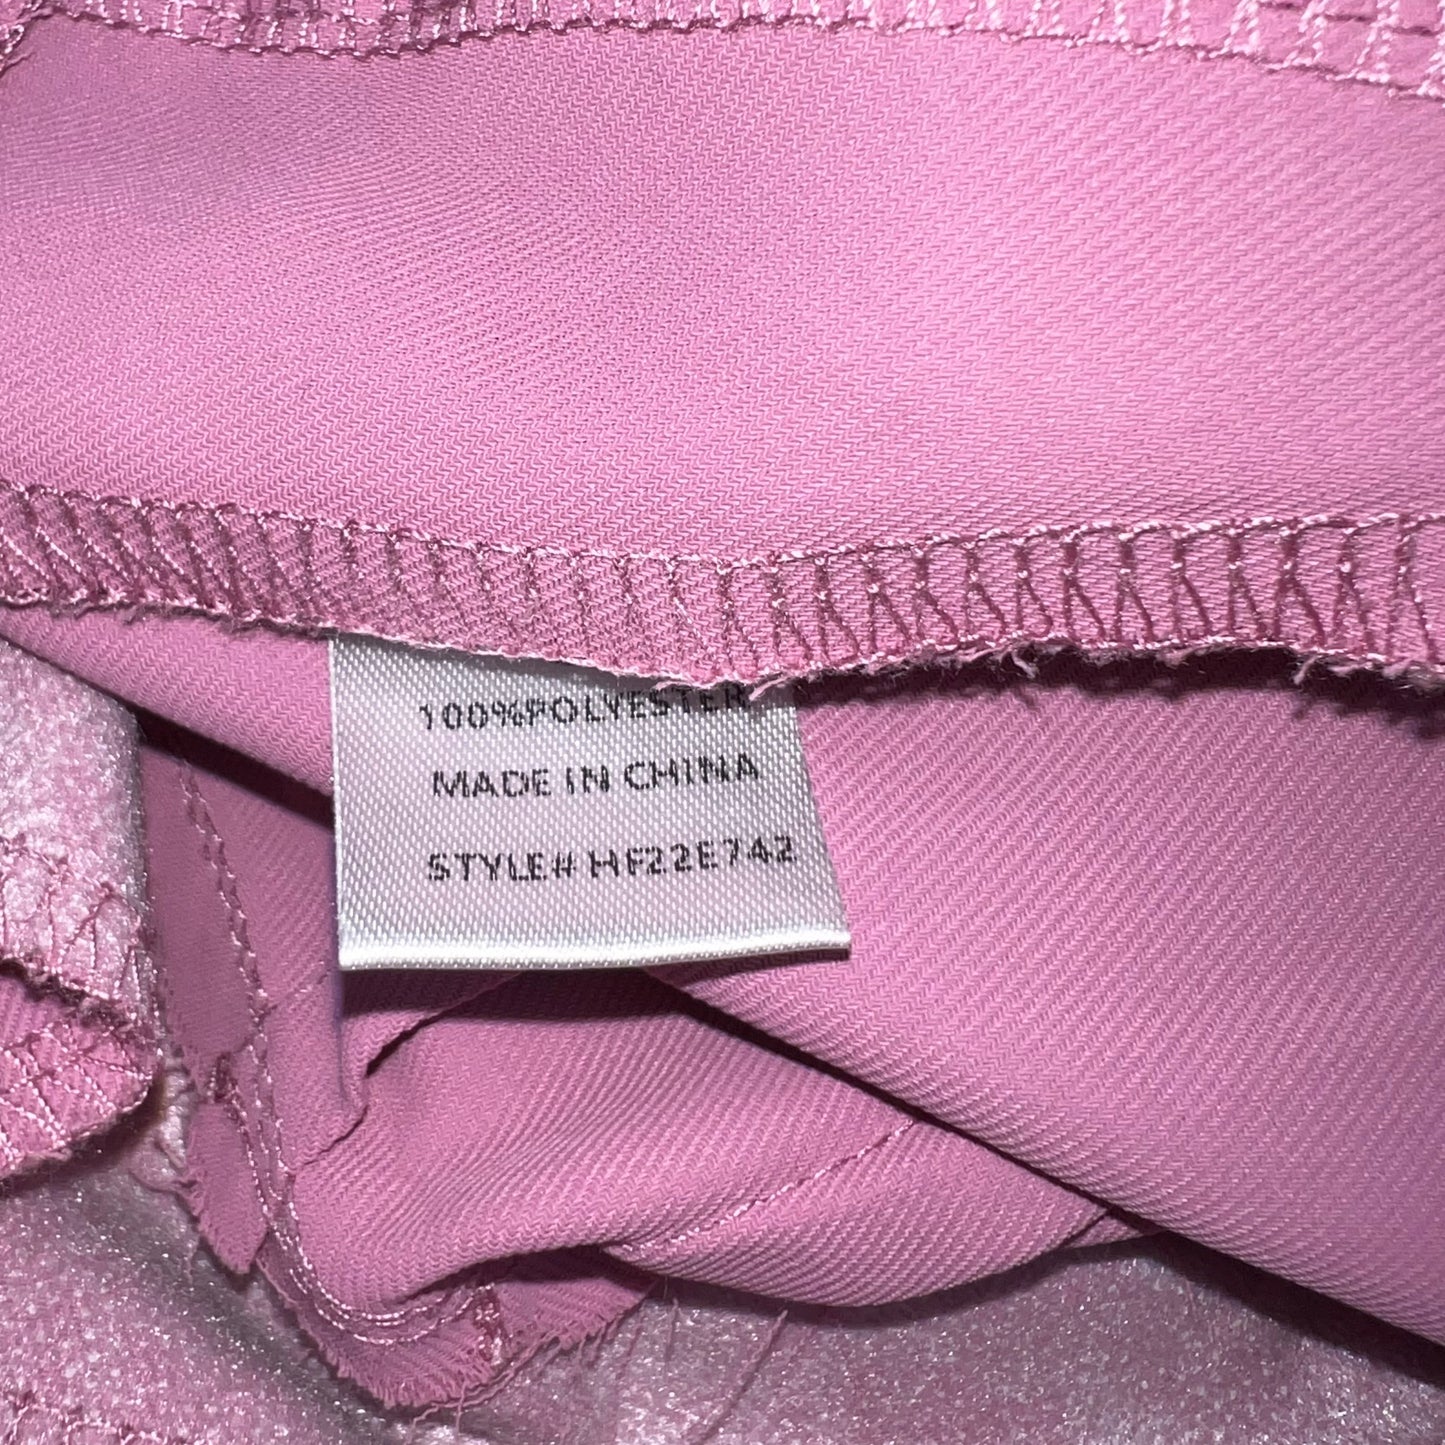 Pink Shorts By Hyfve, Size: M